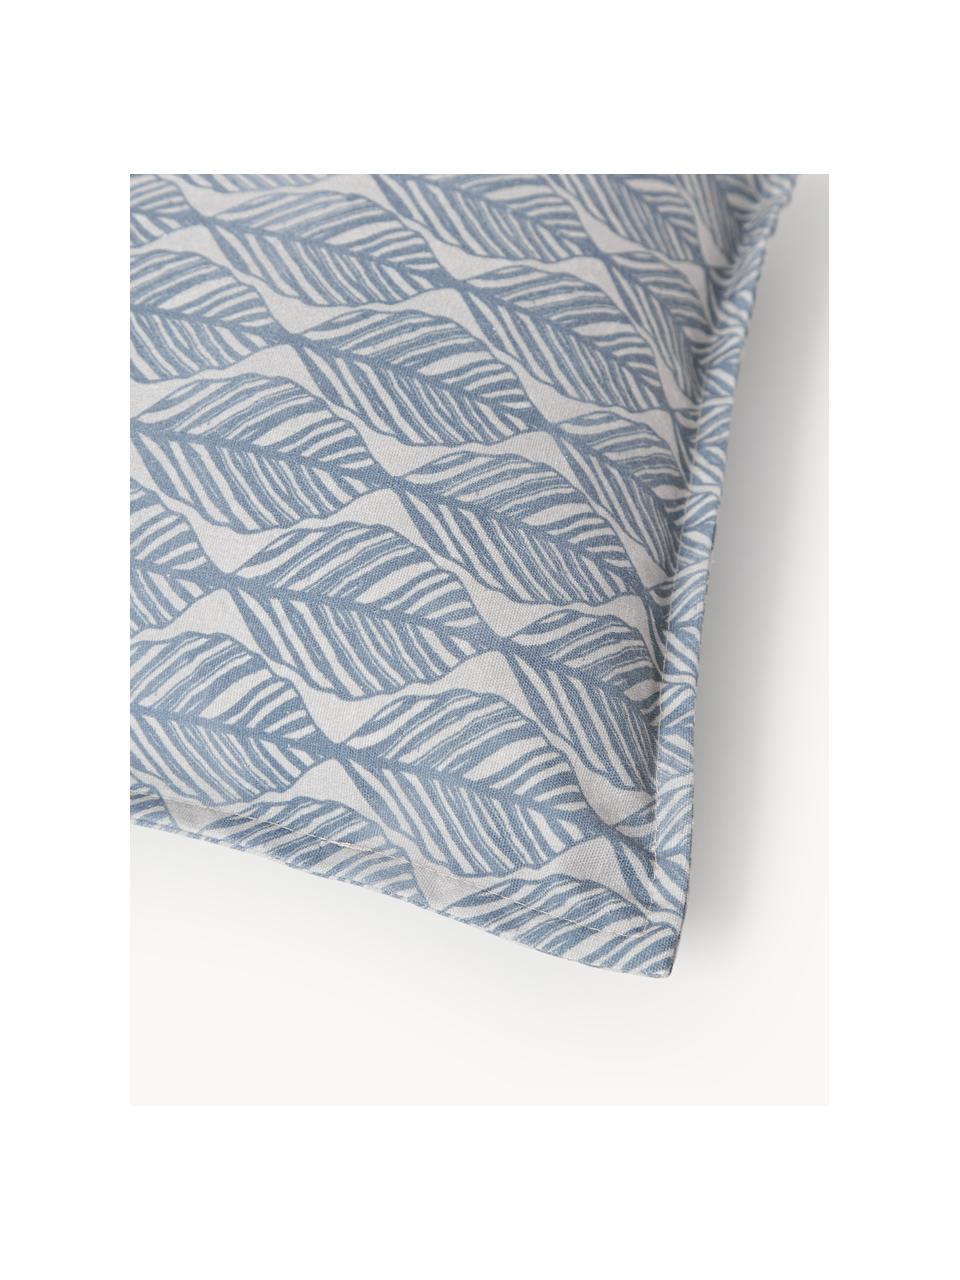 Kissenhüllen Armanda mit grafischem Muster, 2er-Set, 80 % Polyester, 20 % Baumwolle, Graublau, Hellbeige, B 45 x L 45 cm